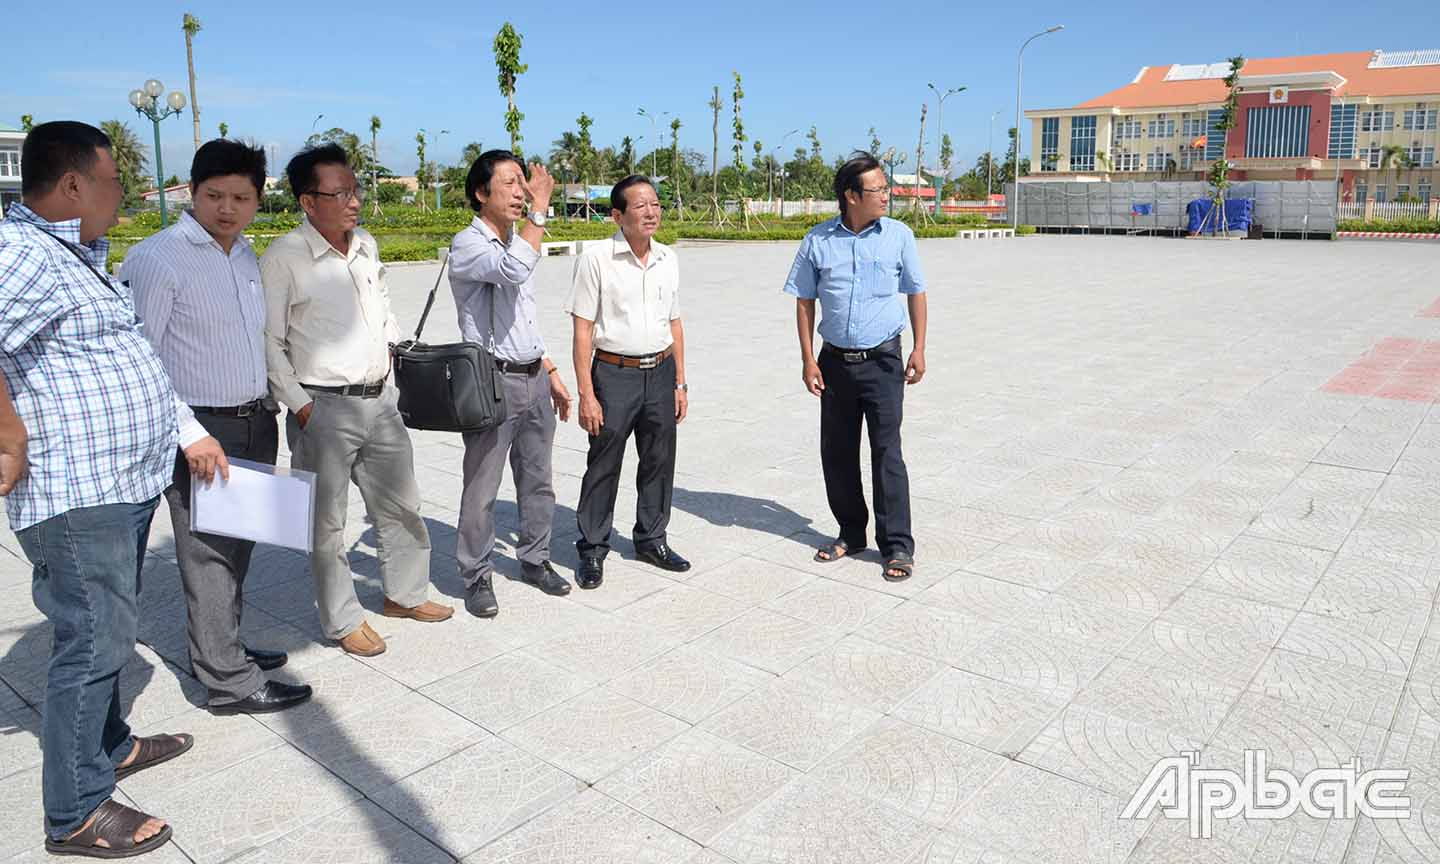 Các đại biểu khảo sát địa điểm dự kiến tổ chức Lễ Khai mạc tại Quảng trường Khu hành chính huyện Cai Lậy.